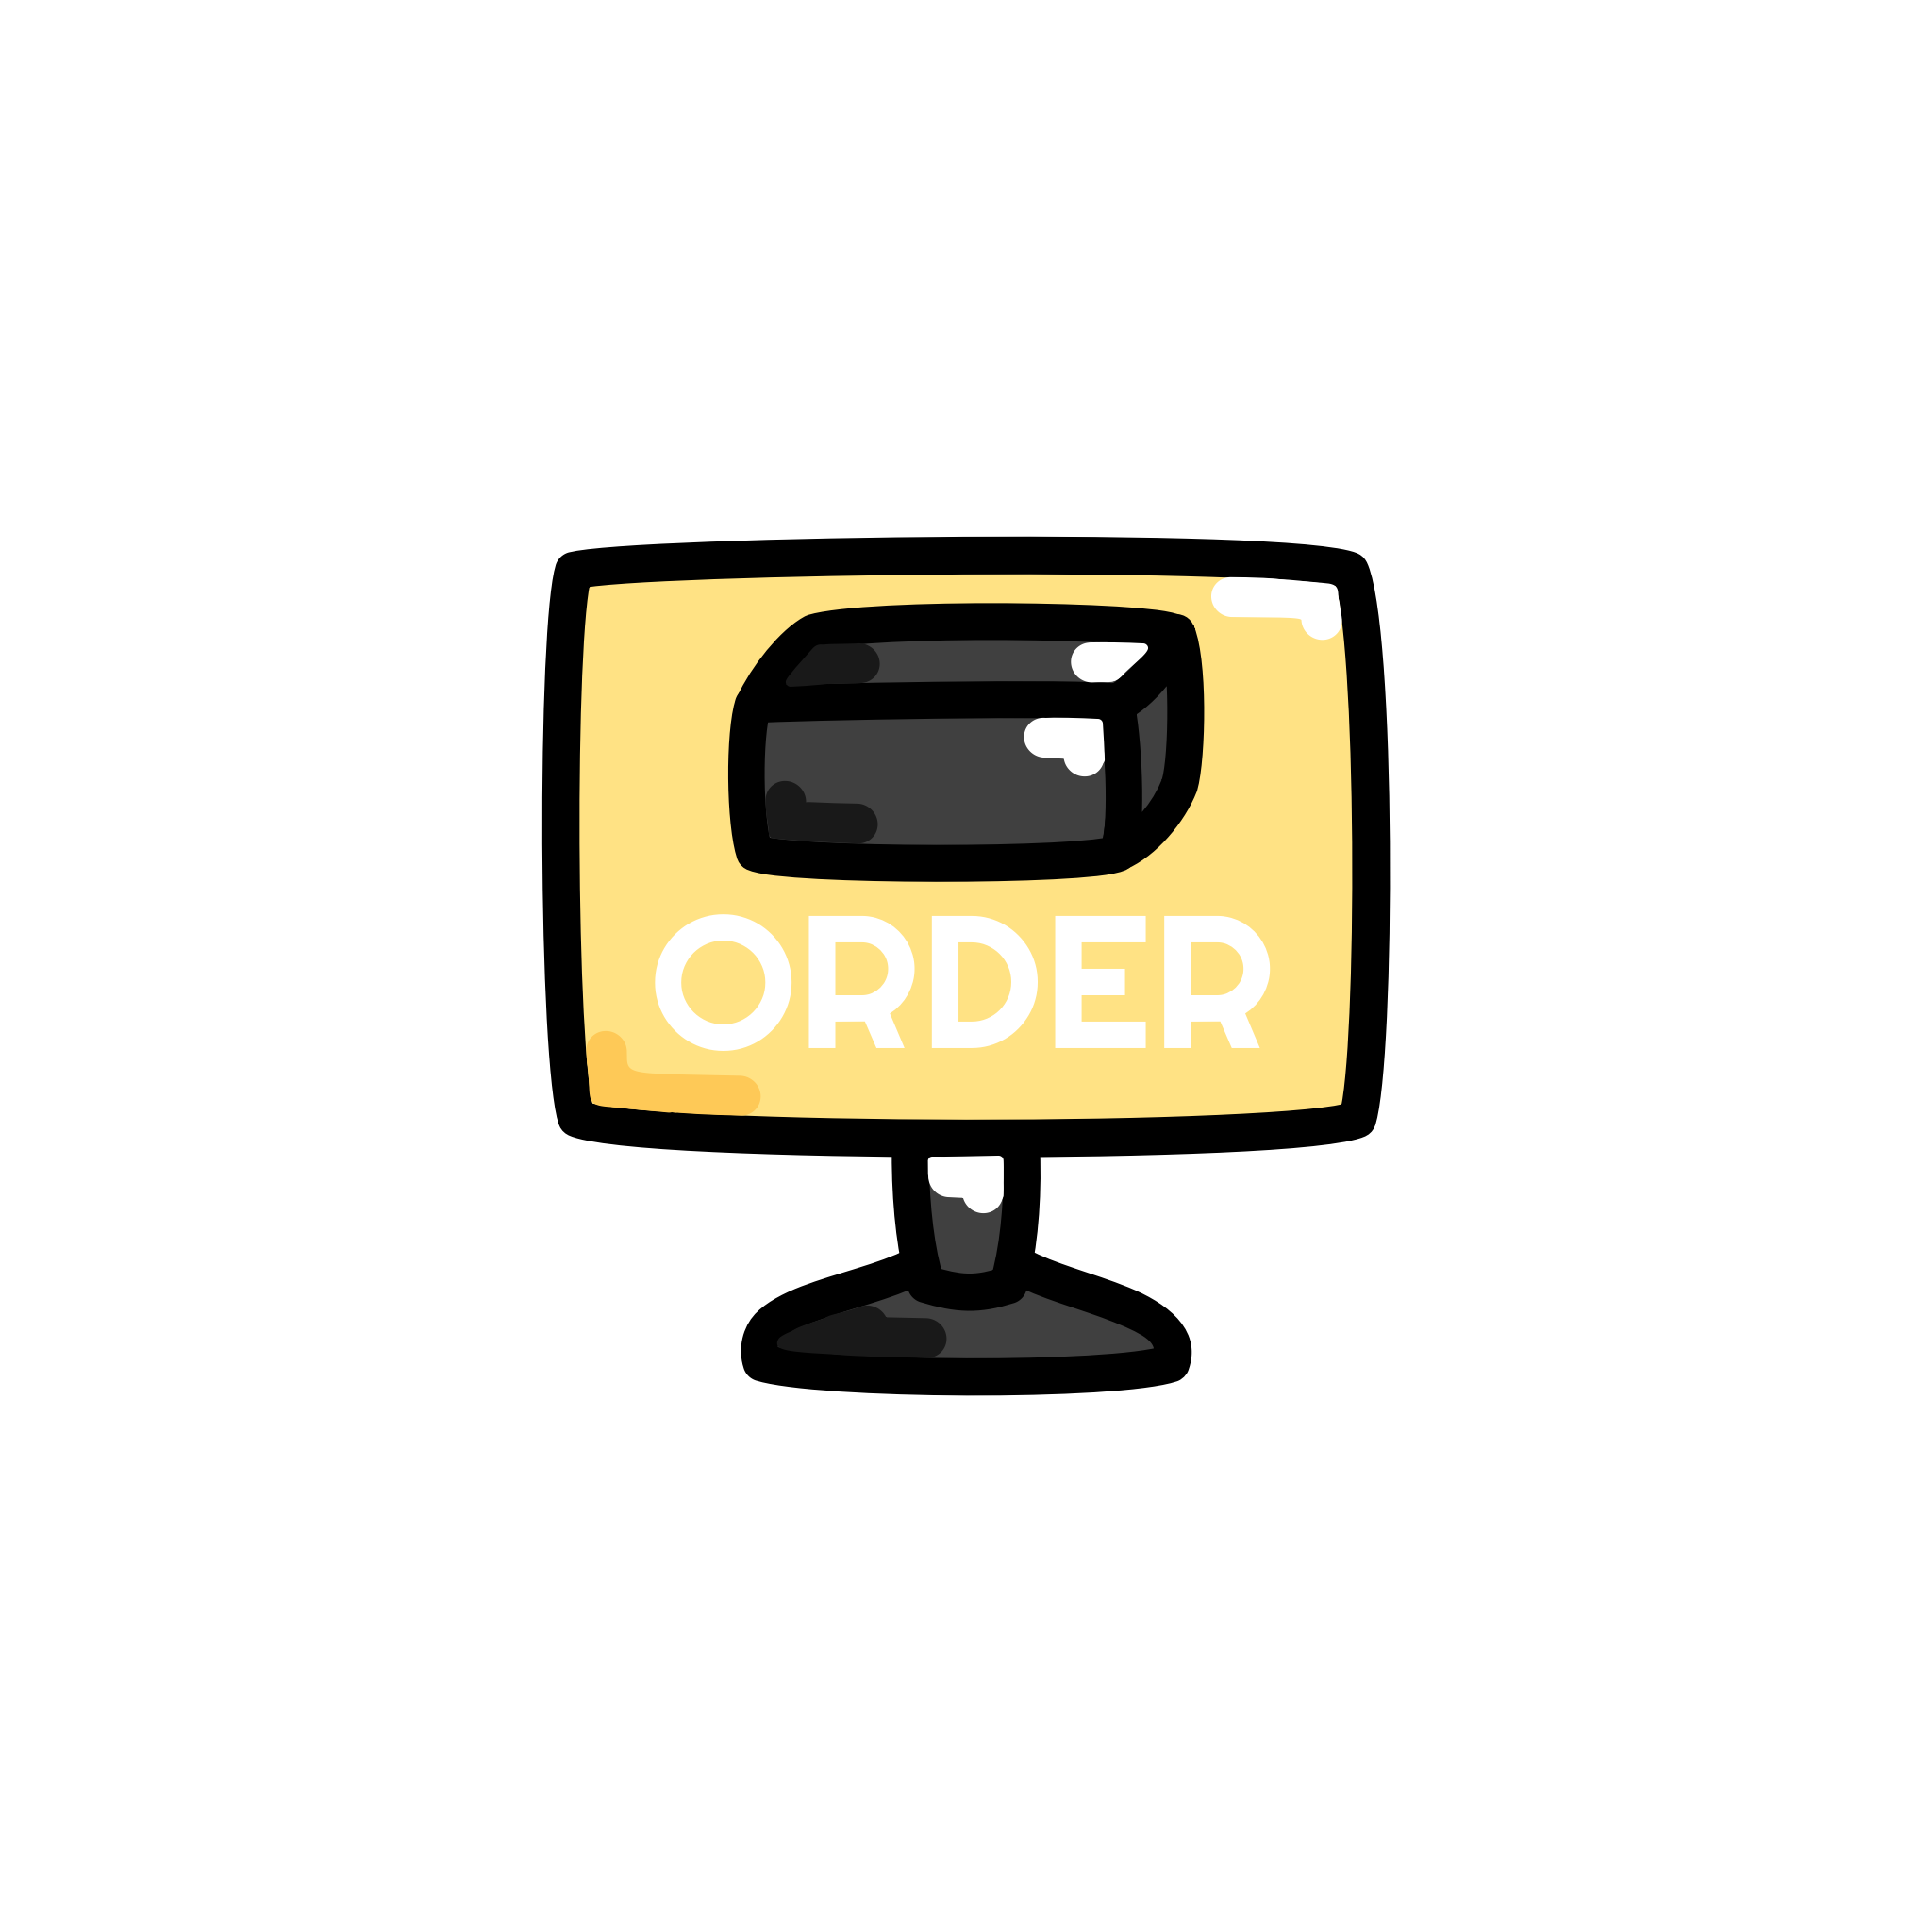 Illustration eines Bildschirms mit dem Wort 'Order' und einer Ravioli Mehrweg-Versandverpackung